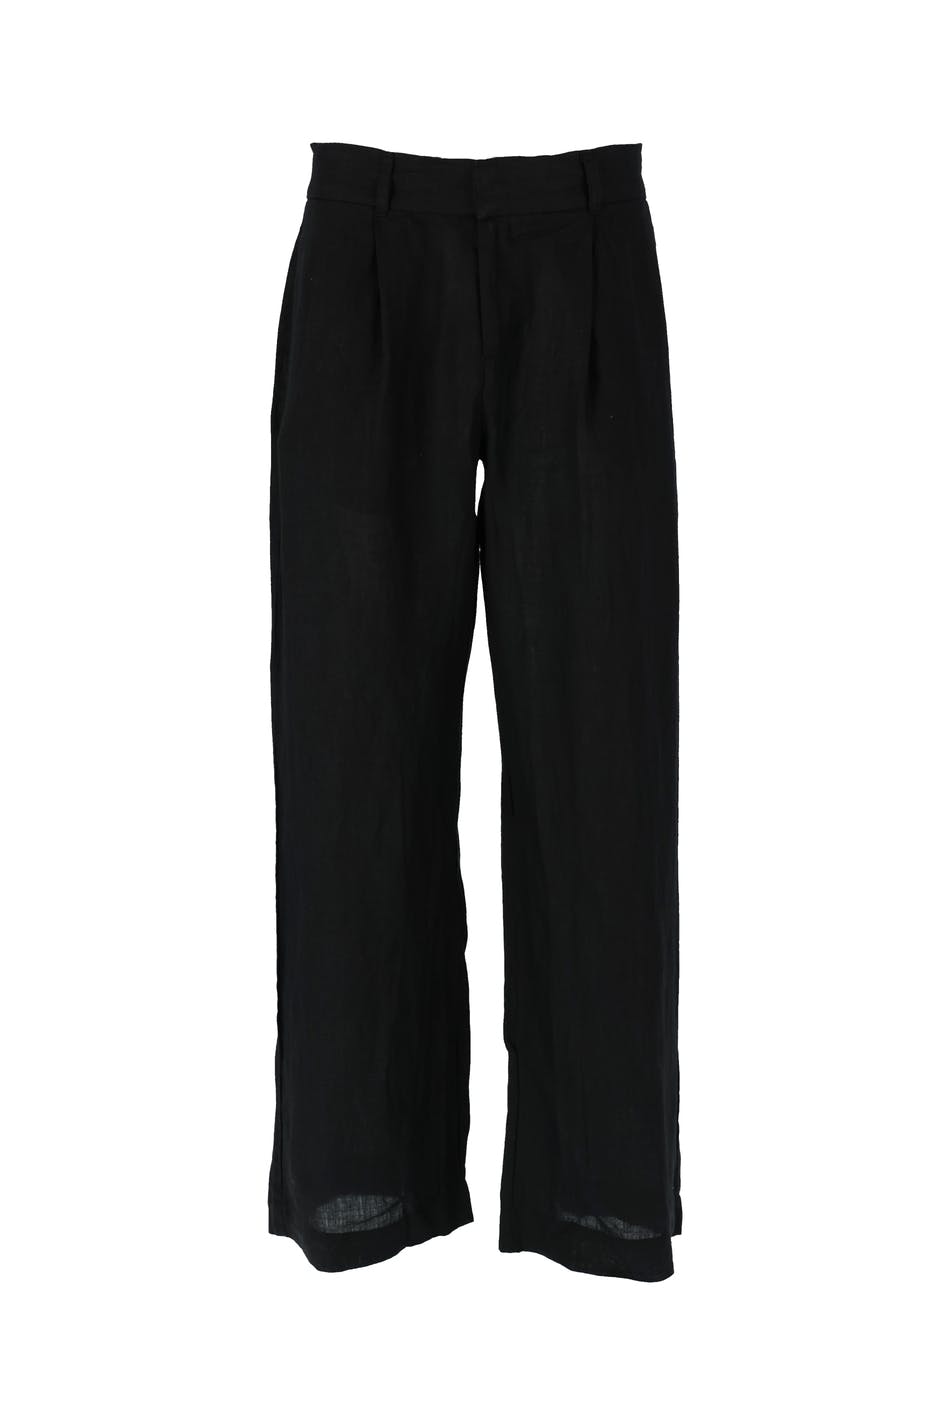 Gina Tricot - Tall linen trousers - hørbukser- Black - L - Female